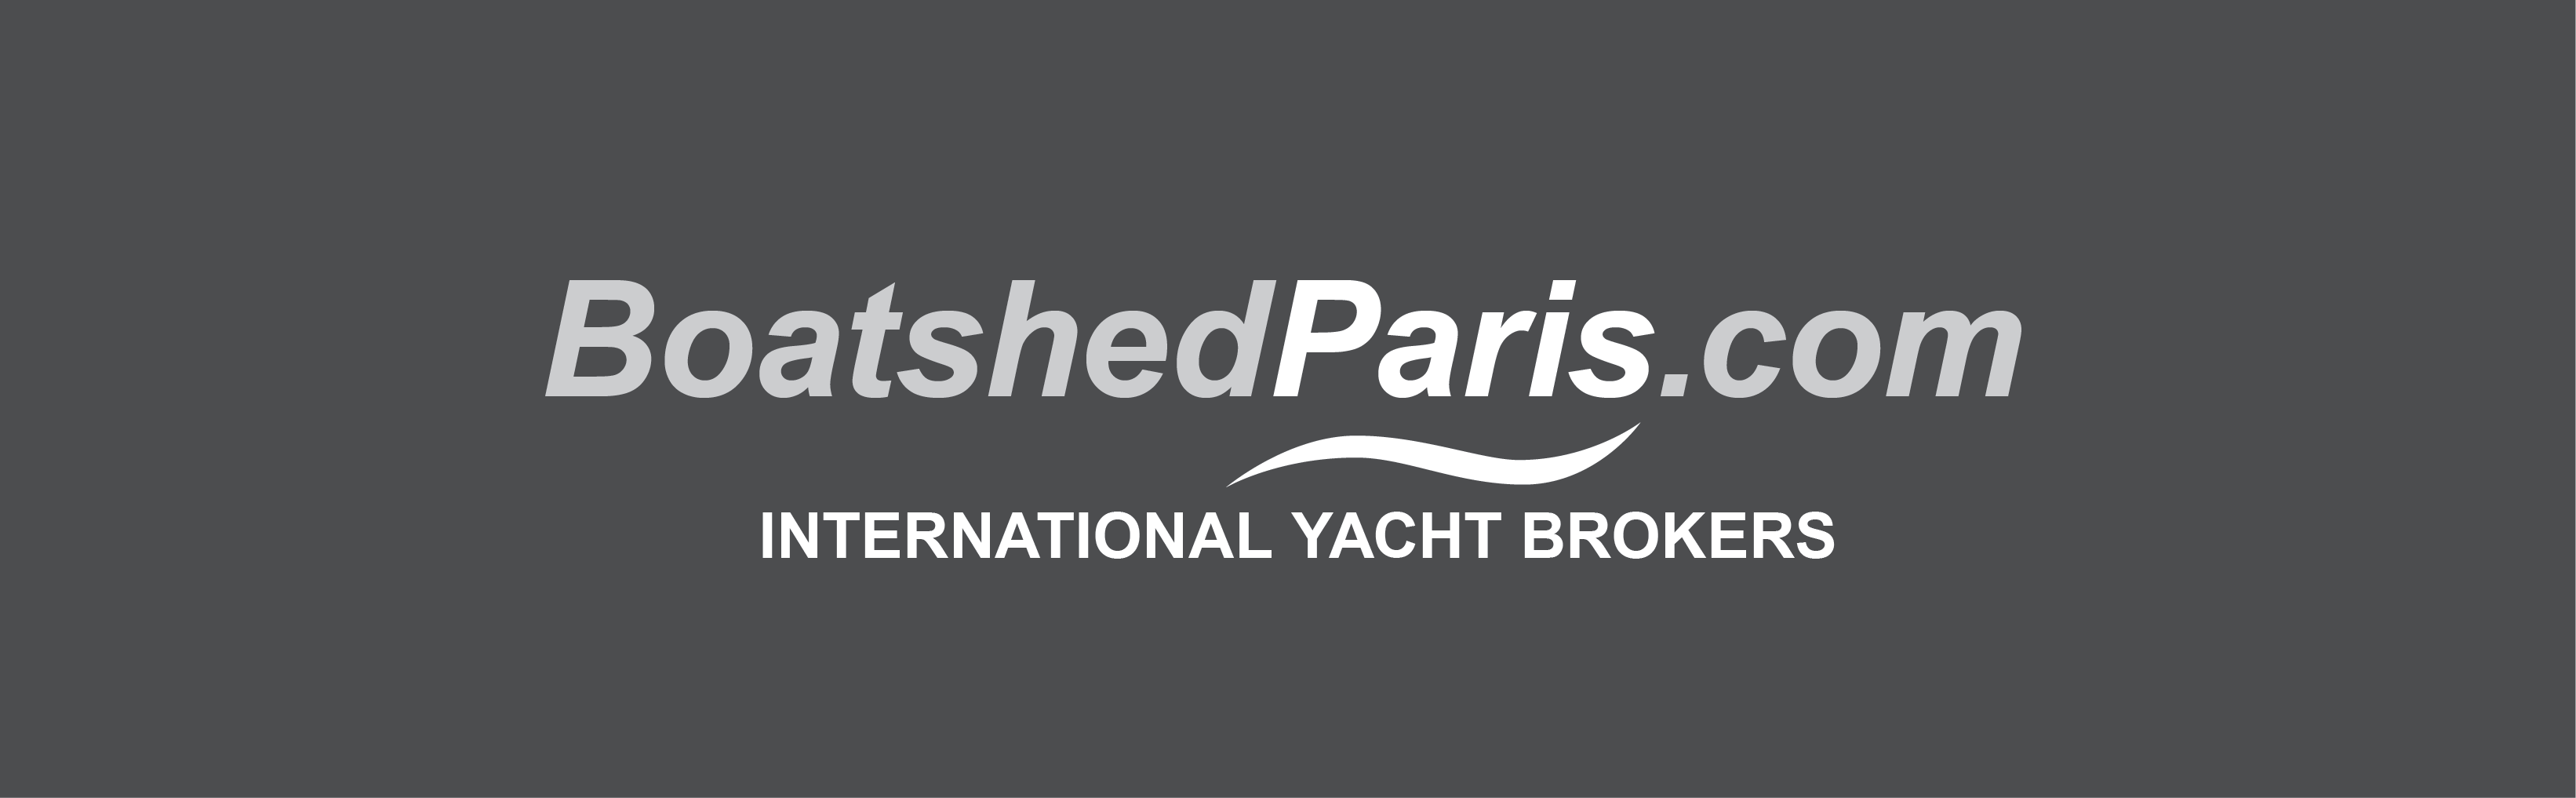 Boatshed Paris